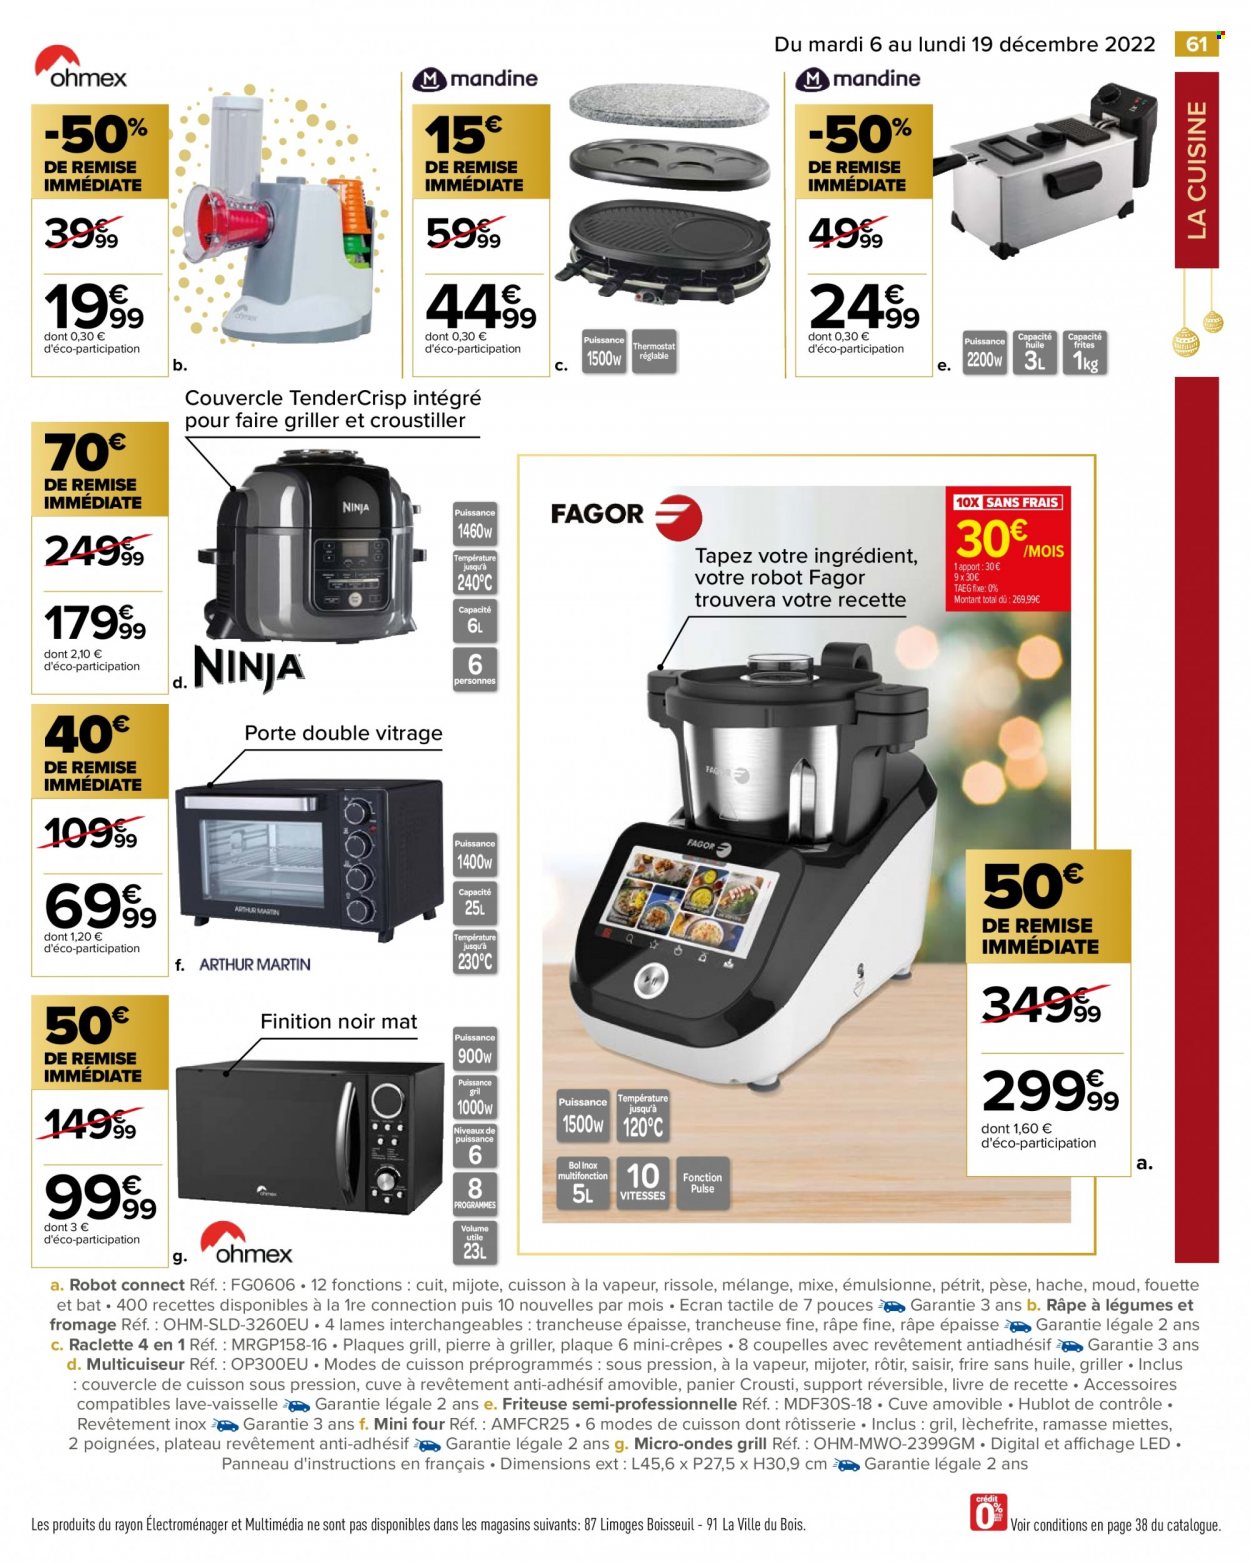 thumbnail - Catalogue Carrefour Hypermarchés - 06/12/2022 - 19/12/2022 - Produits soldés - crêpes, coupelle, livre, vitrage, mini four, four à micro-ondes, friteuse. Page 63.